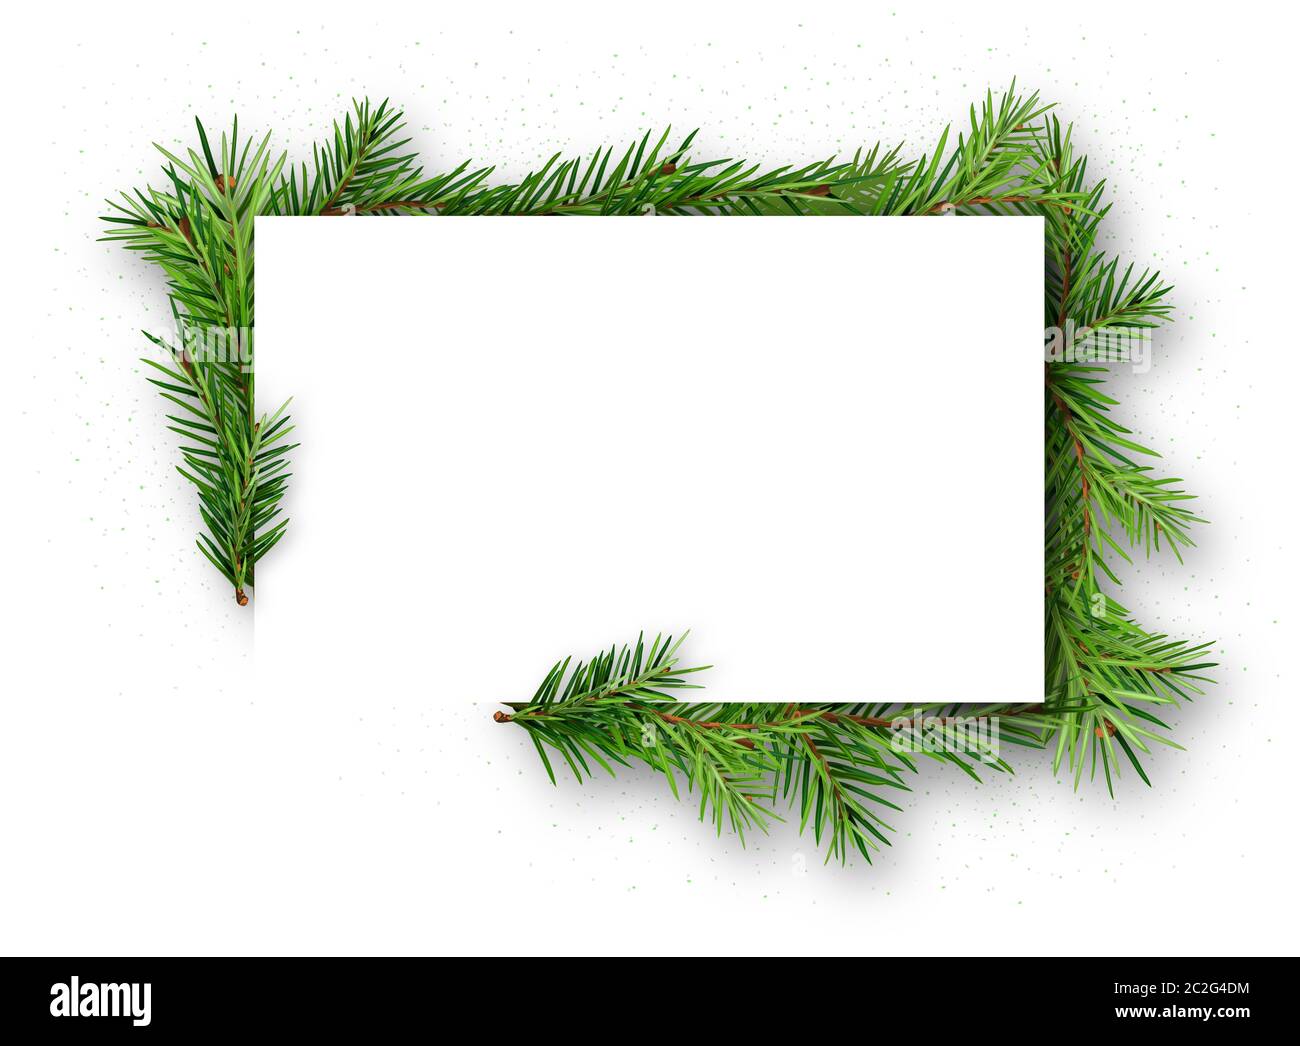 Rahmen mit Nadelholz Zweige auf weißem Hintergrund Stockfotografie - Alamy